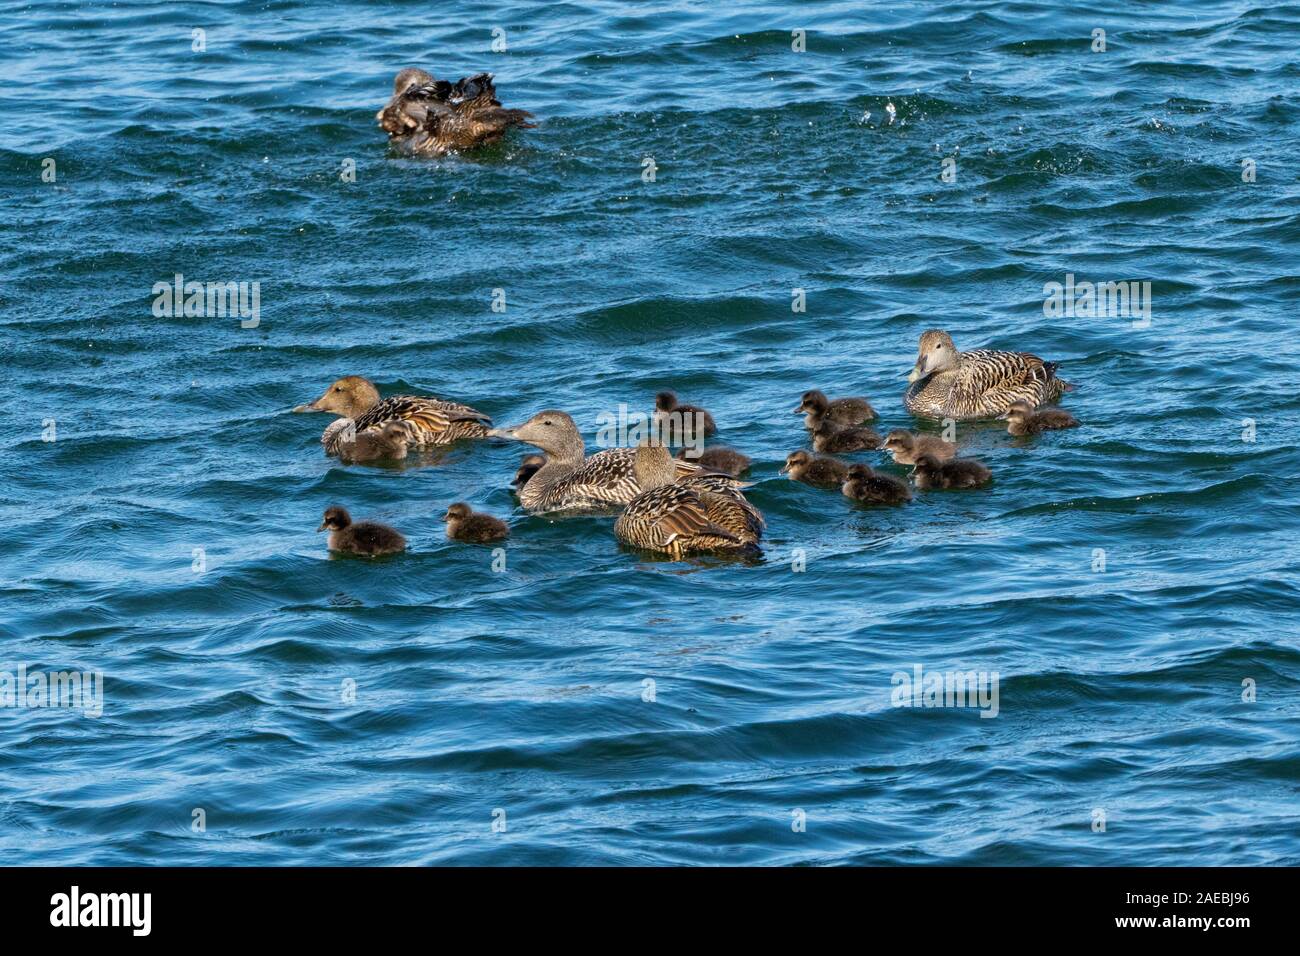 Comune femmina eider duck (Somateria mollissima) con pulcini. Questo duck è trovato sopra le coste settentrionali dell'Europa, Nord America e Siberia Orientale. Foto Stock